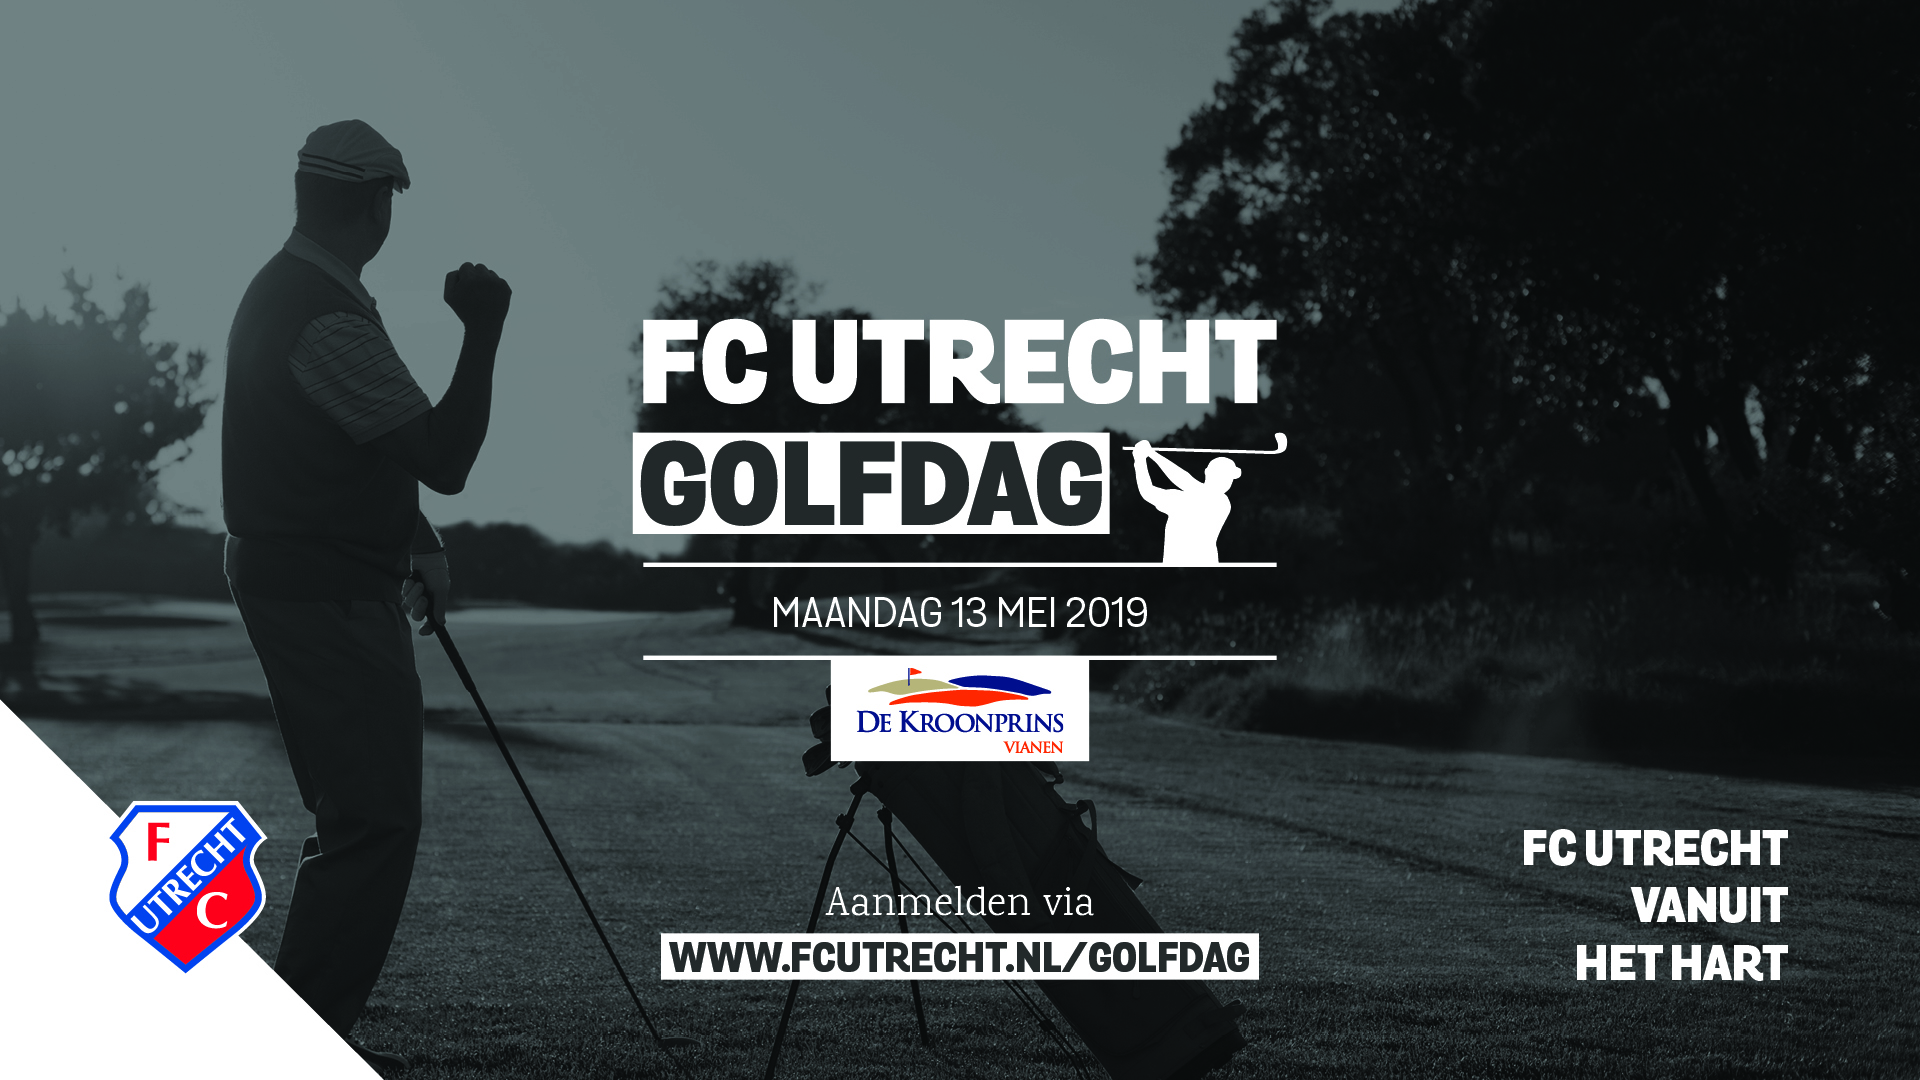 FC Utrecht Golfdag op maandag 13 mei